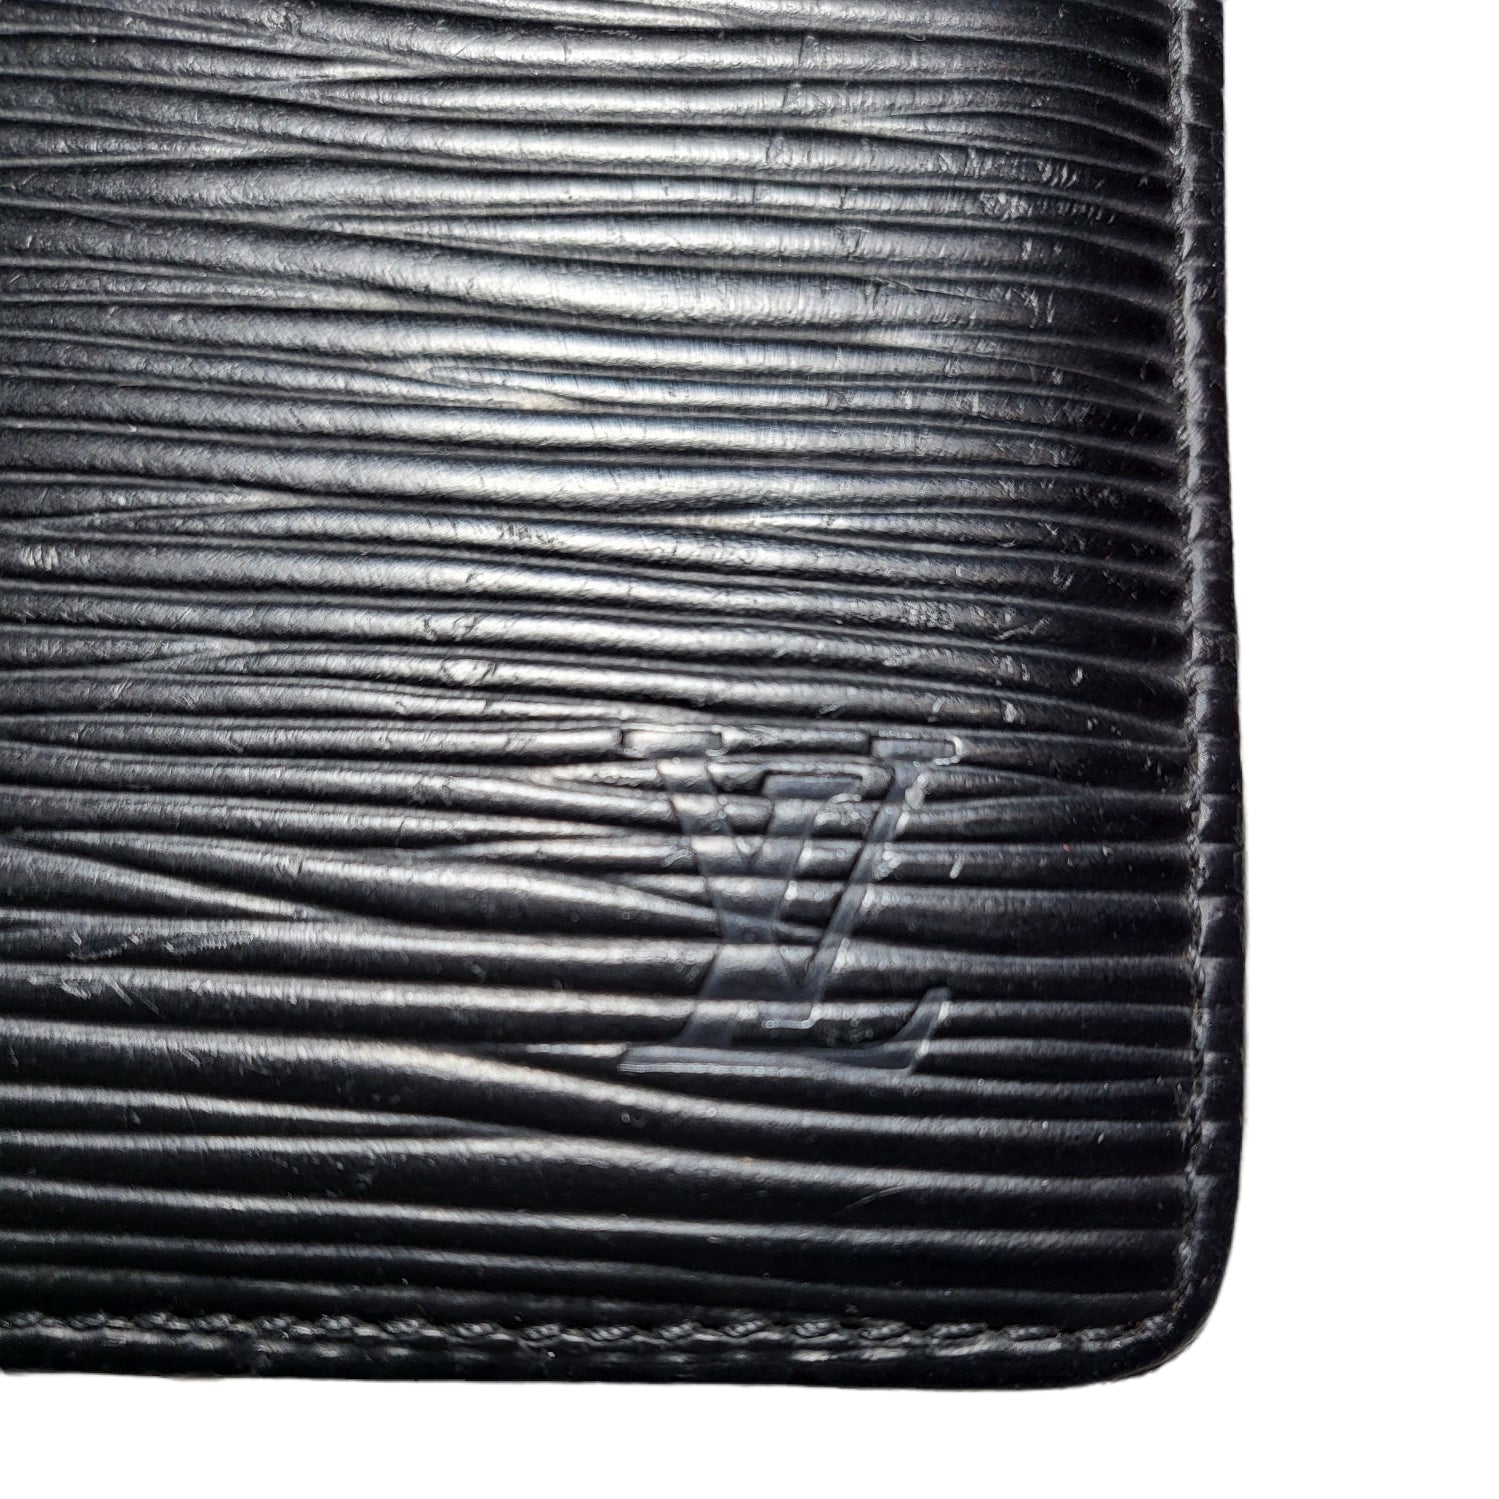 Louis Vuitton, Bags, Louis Vuitton Mens Marco Wallet Epi Leather 52